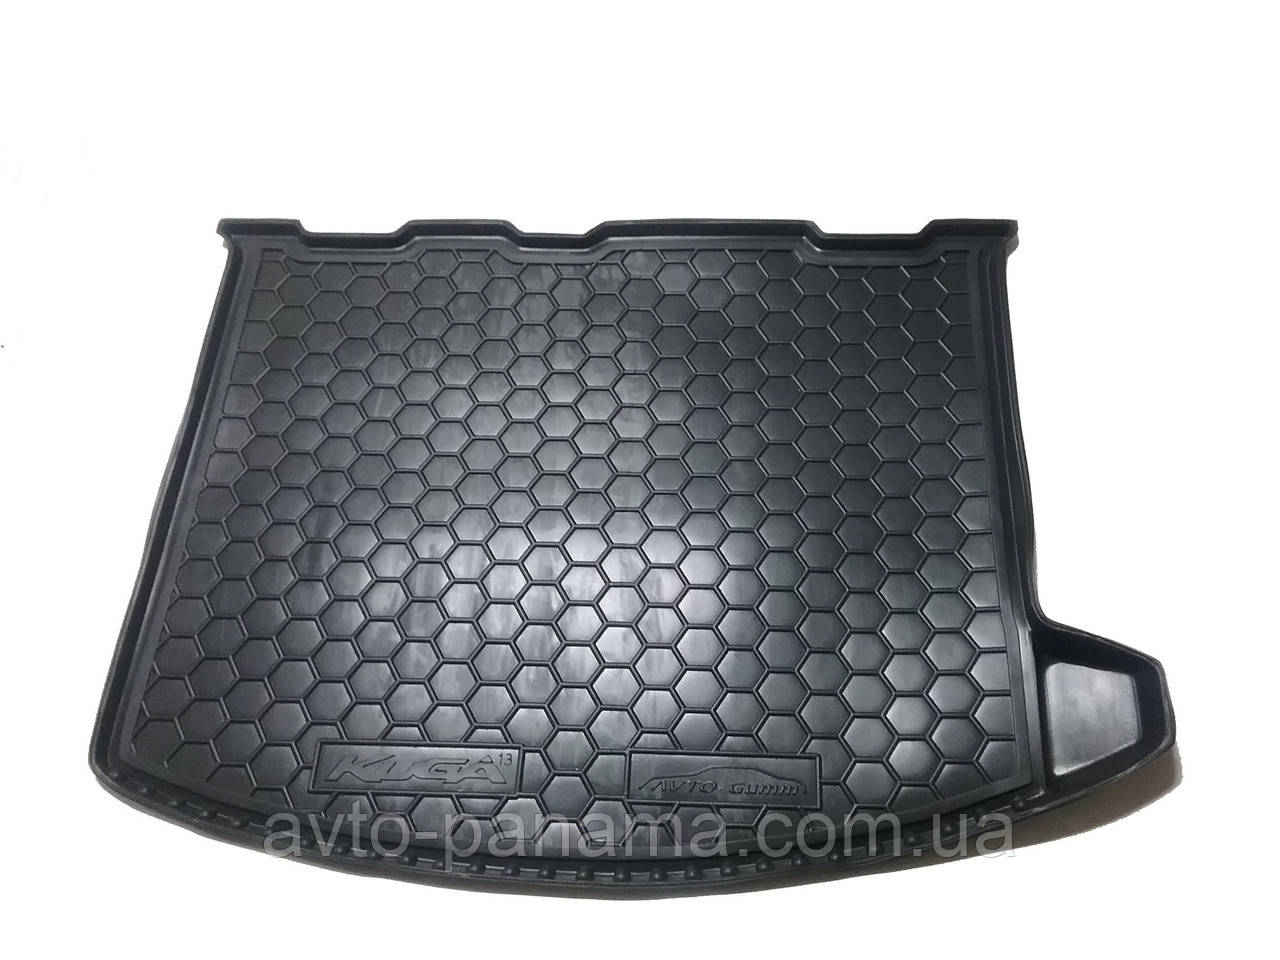 

Полиуретановый коврик в багажник Ford Kuga / Ford Escape с 2013-, Черный